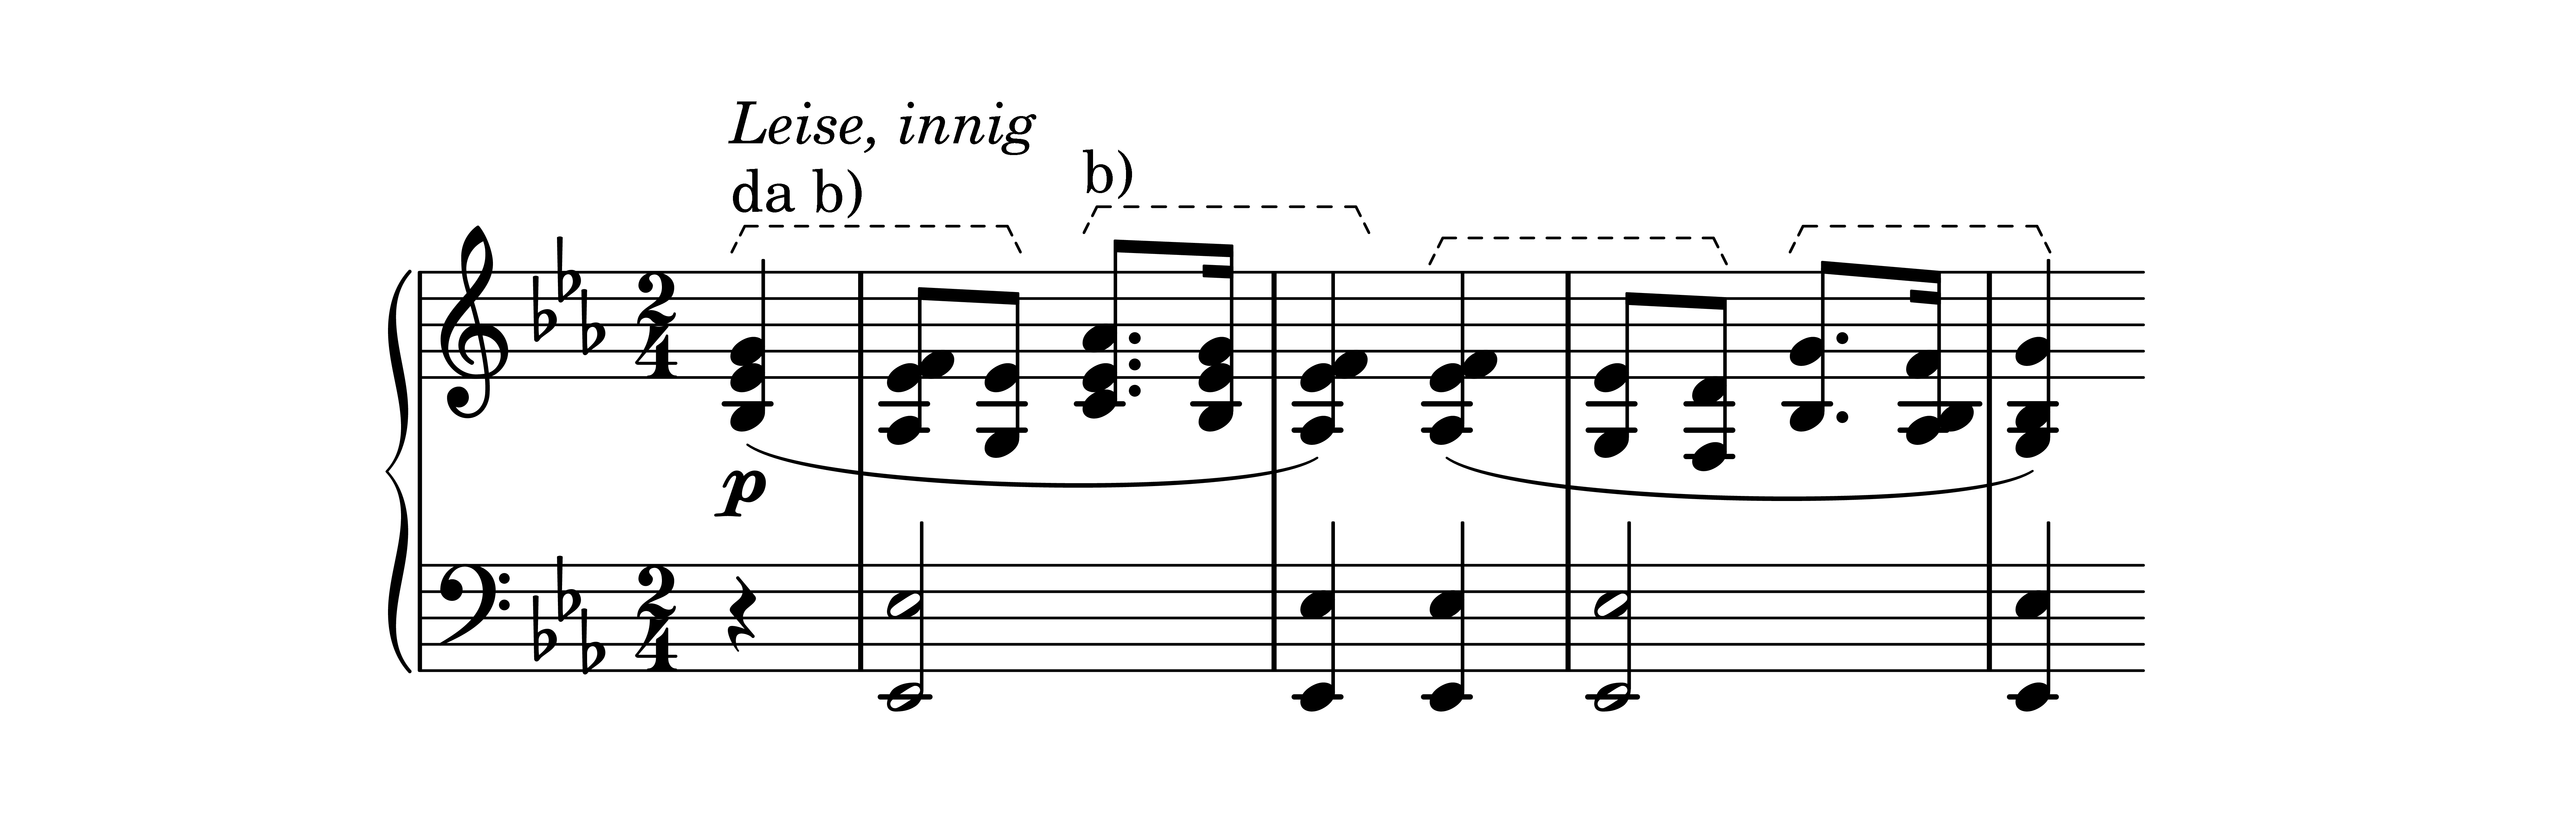 Es. 8: Robert Schumann, Tema in mi bemolle, bb.
                    1-4<